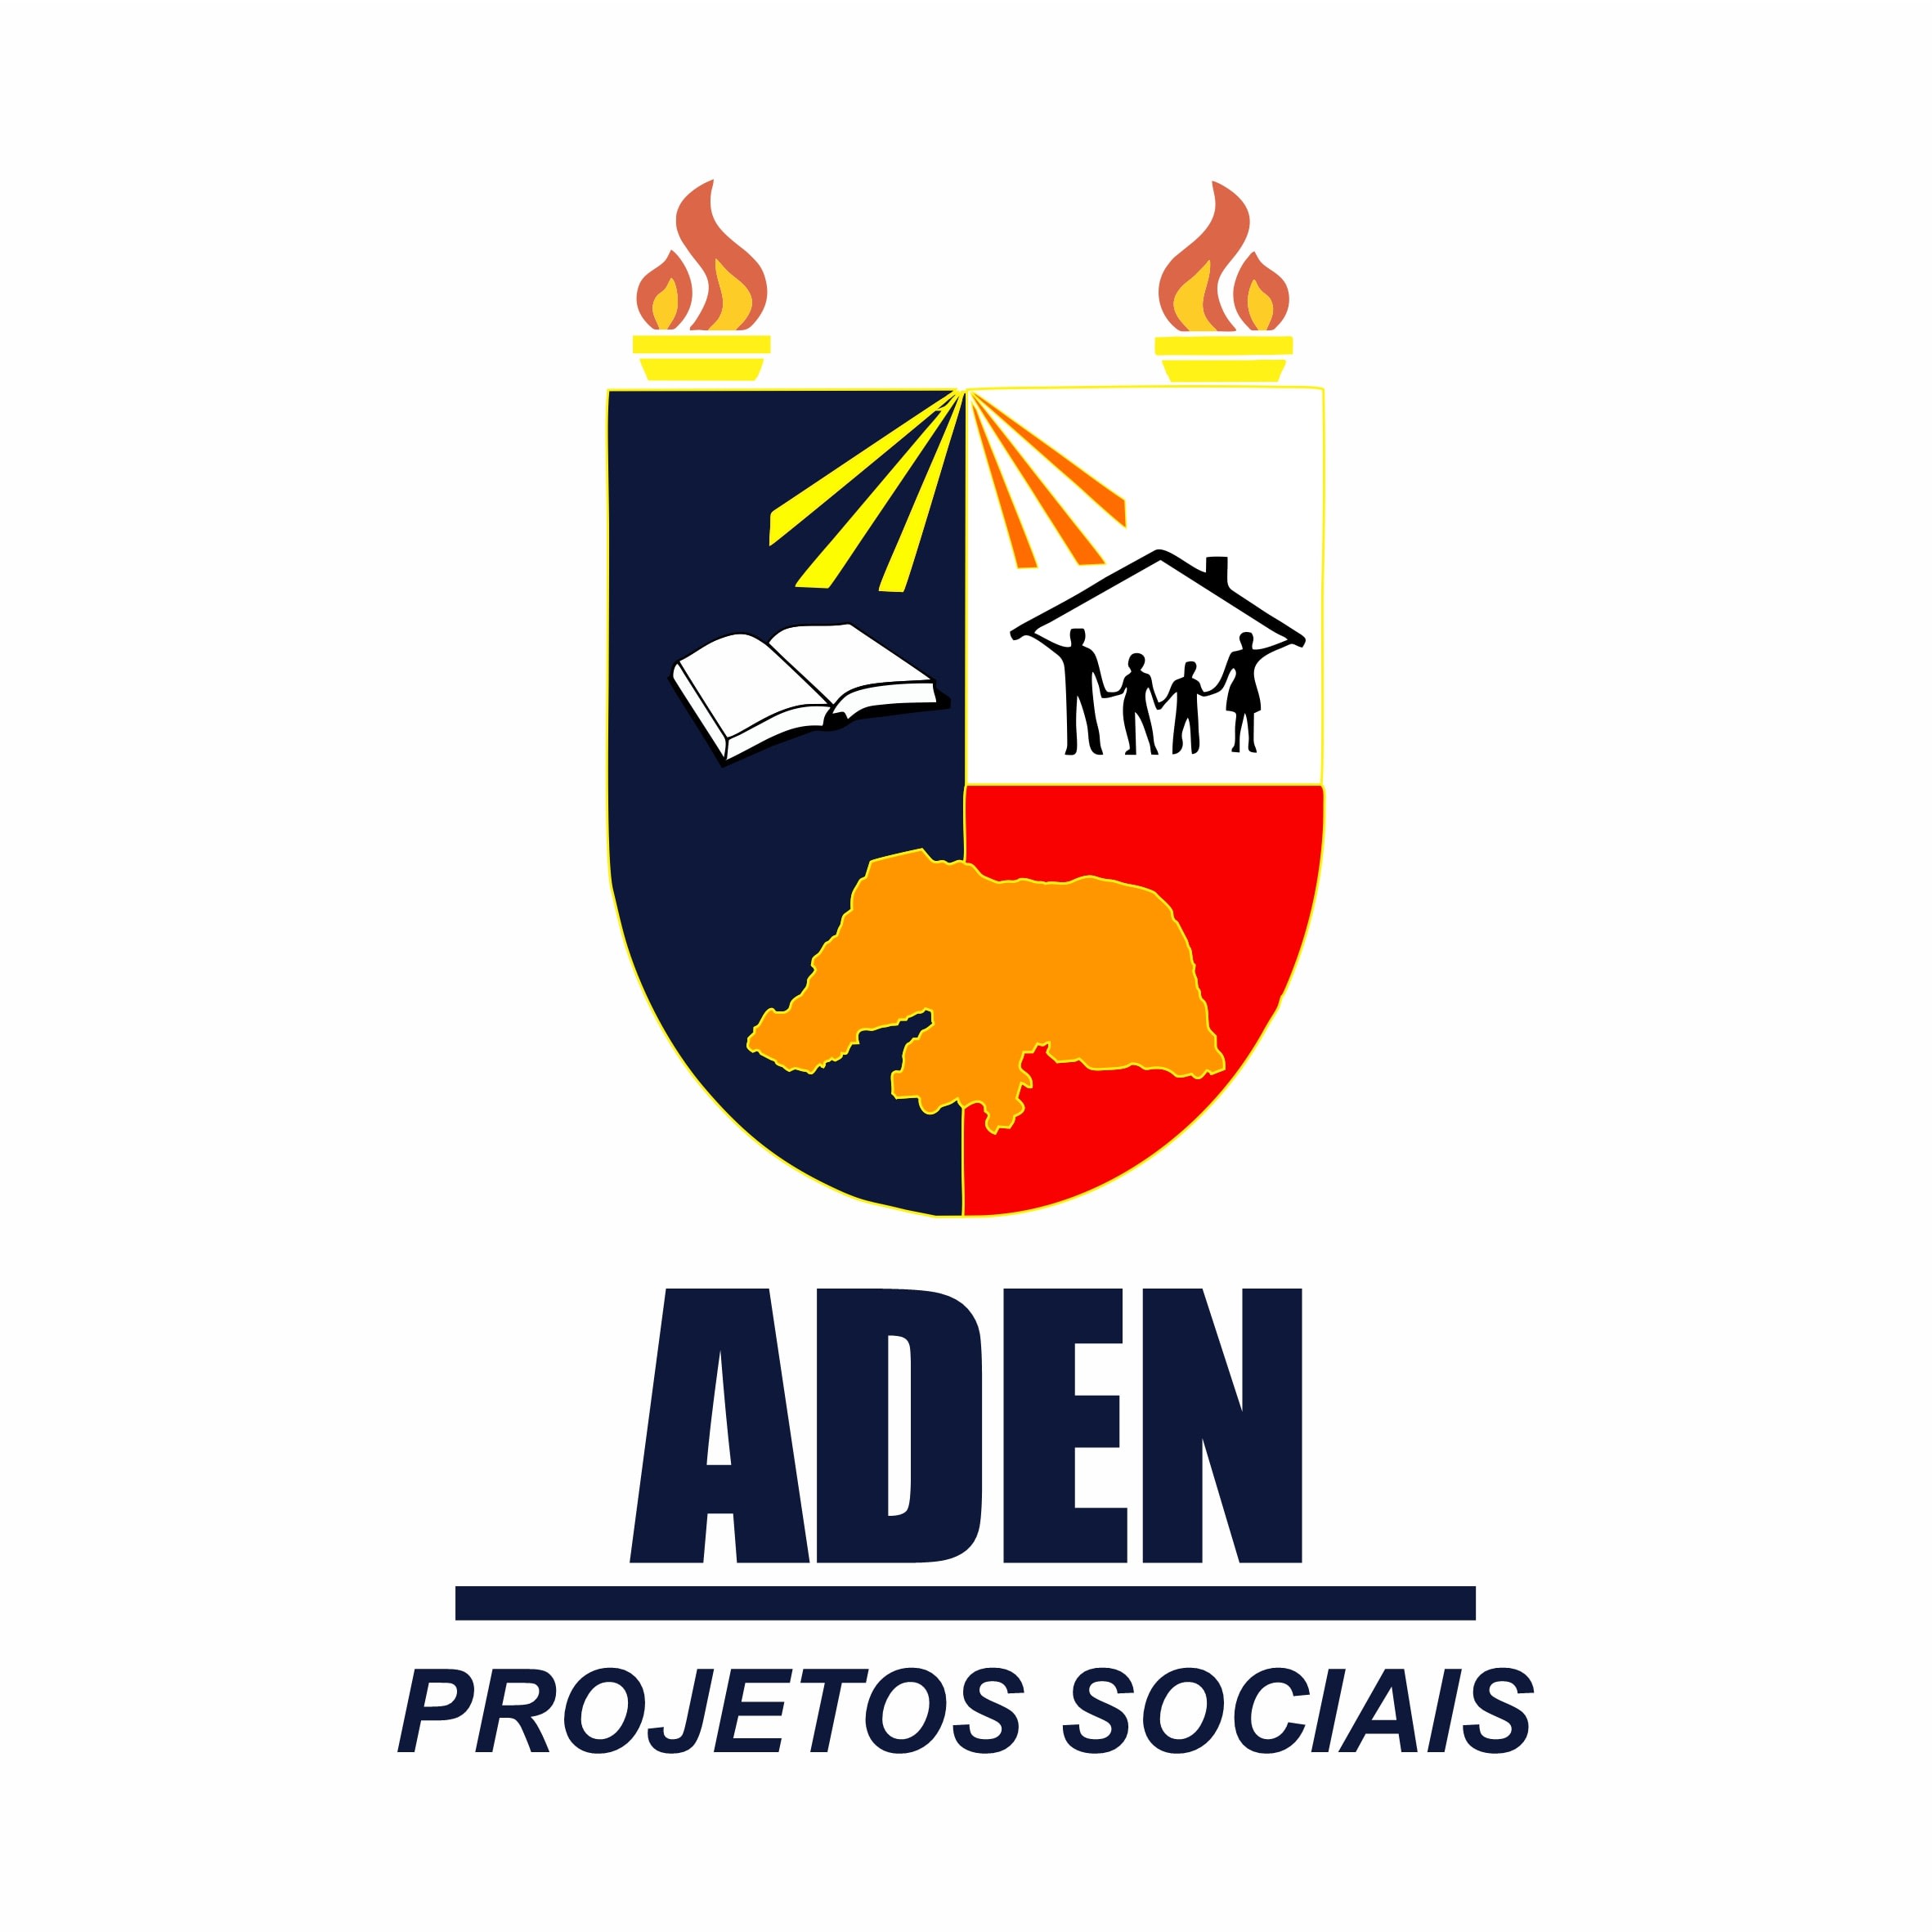 Aden Projetos Sociais